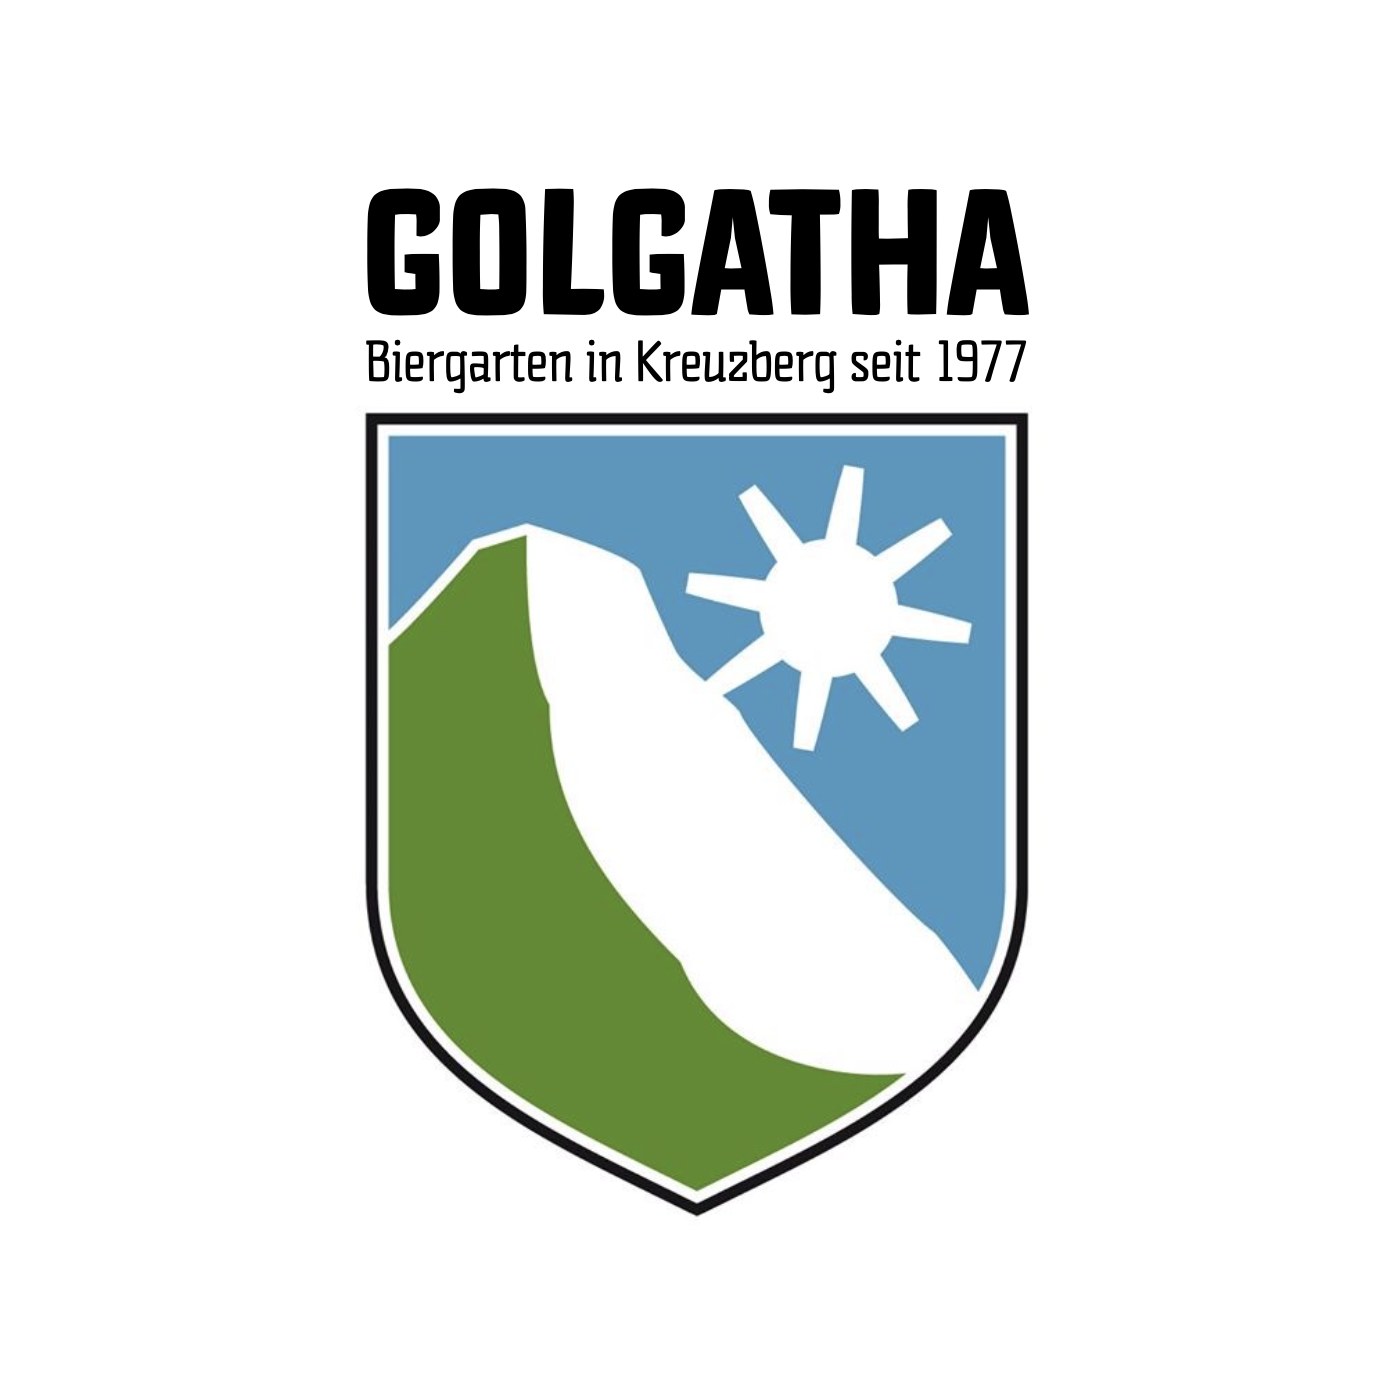 Logo Golgatha - Biergarten in Kreuzberg seit 1977